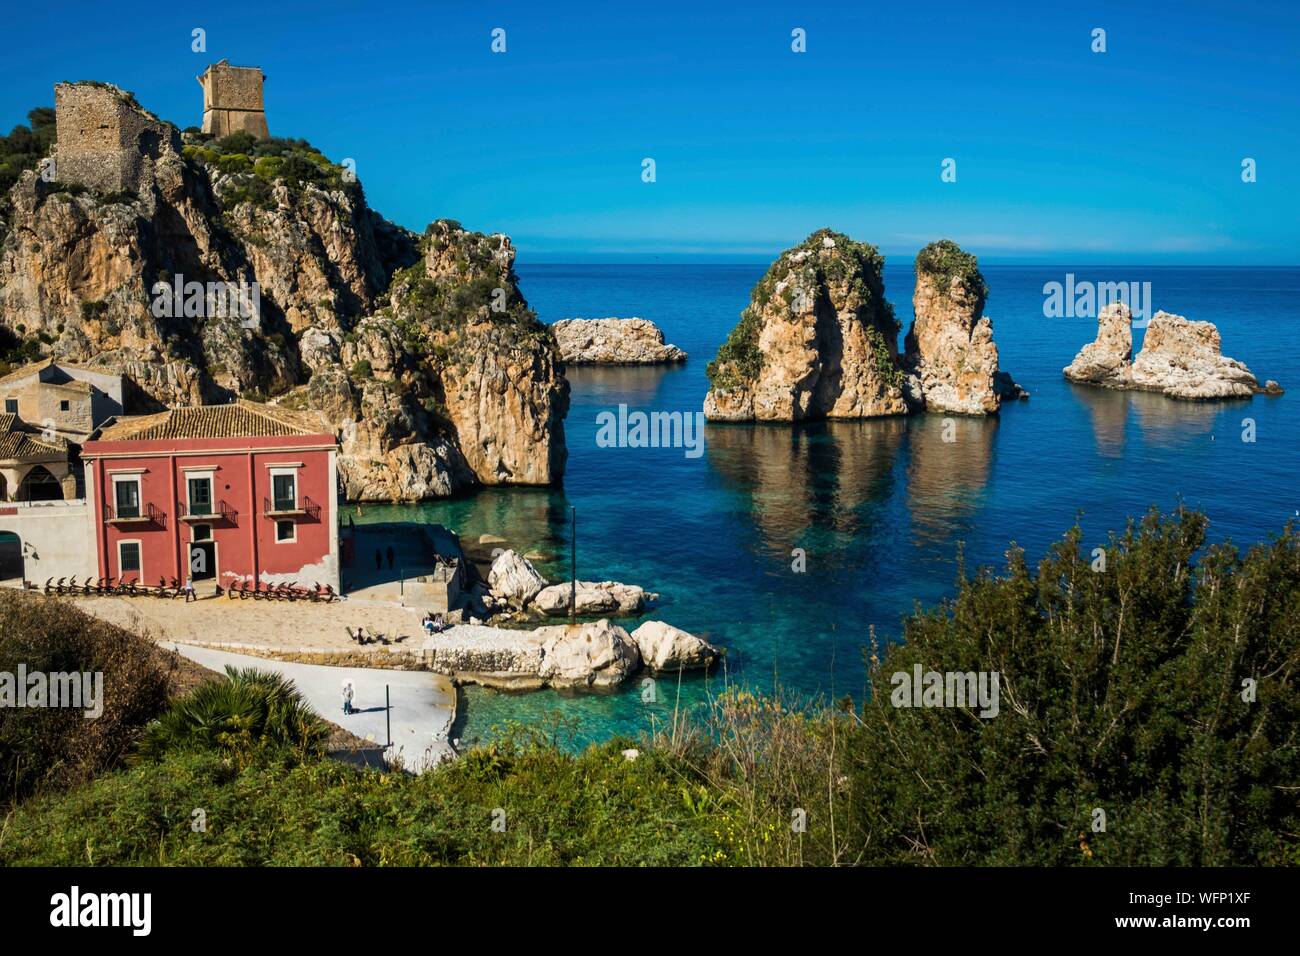 L'Italia, sicilia, Scopello, tonnara o fortificato medievale edificio precedentemente utilizzati per la pesca del tonno Foto Stock